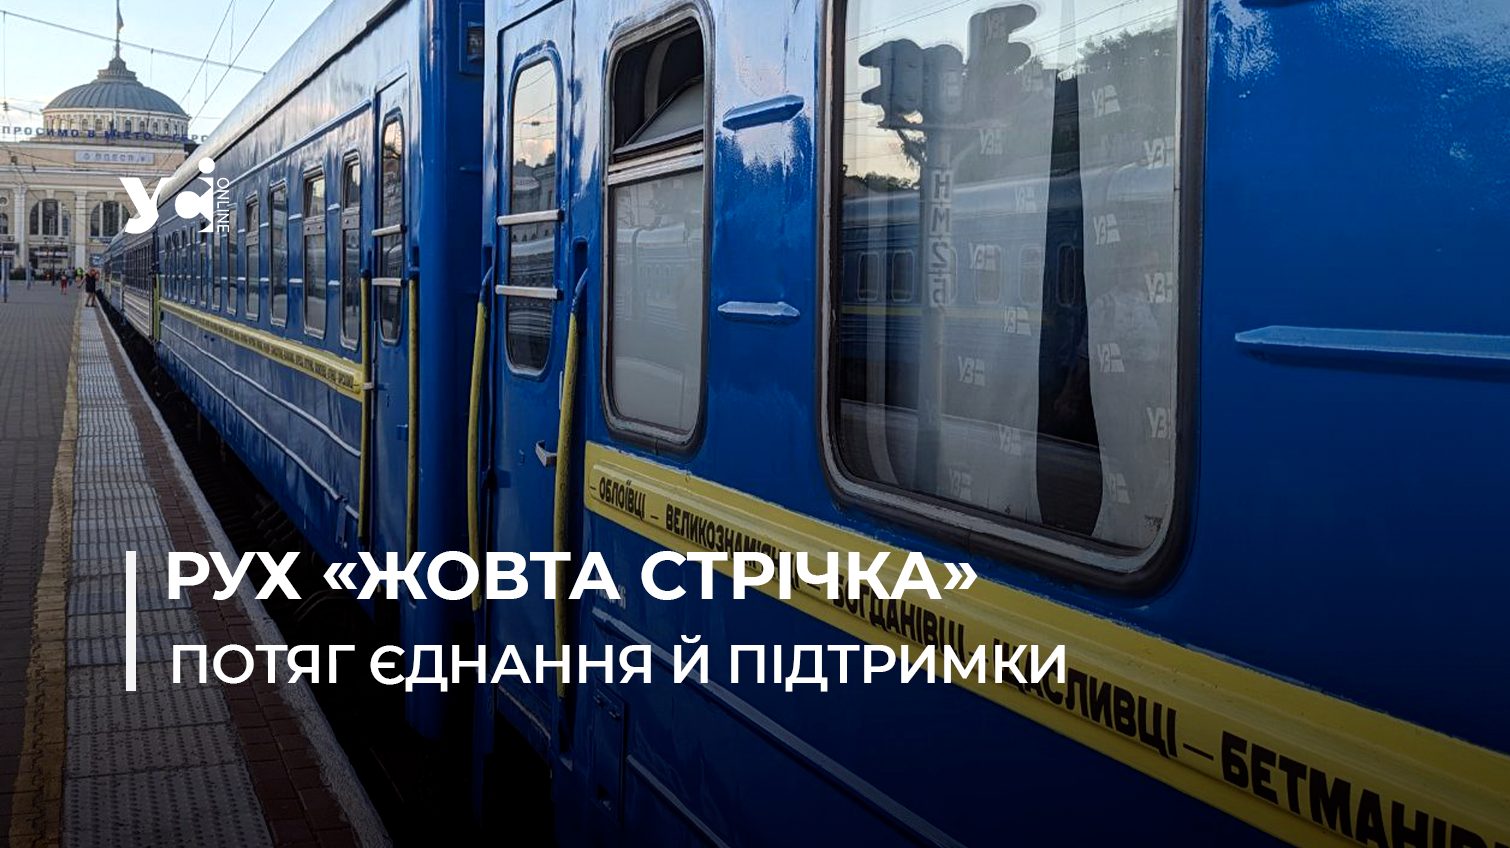 Потяг «Жовта стрічка» з Одеси до прифронтового Краматорська нагадує про спротив окупації та віру у майбутнє (відео) «фото»